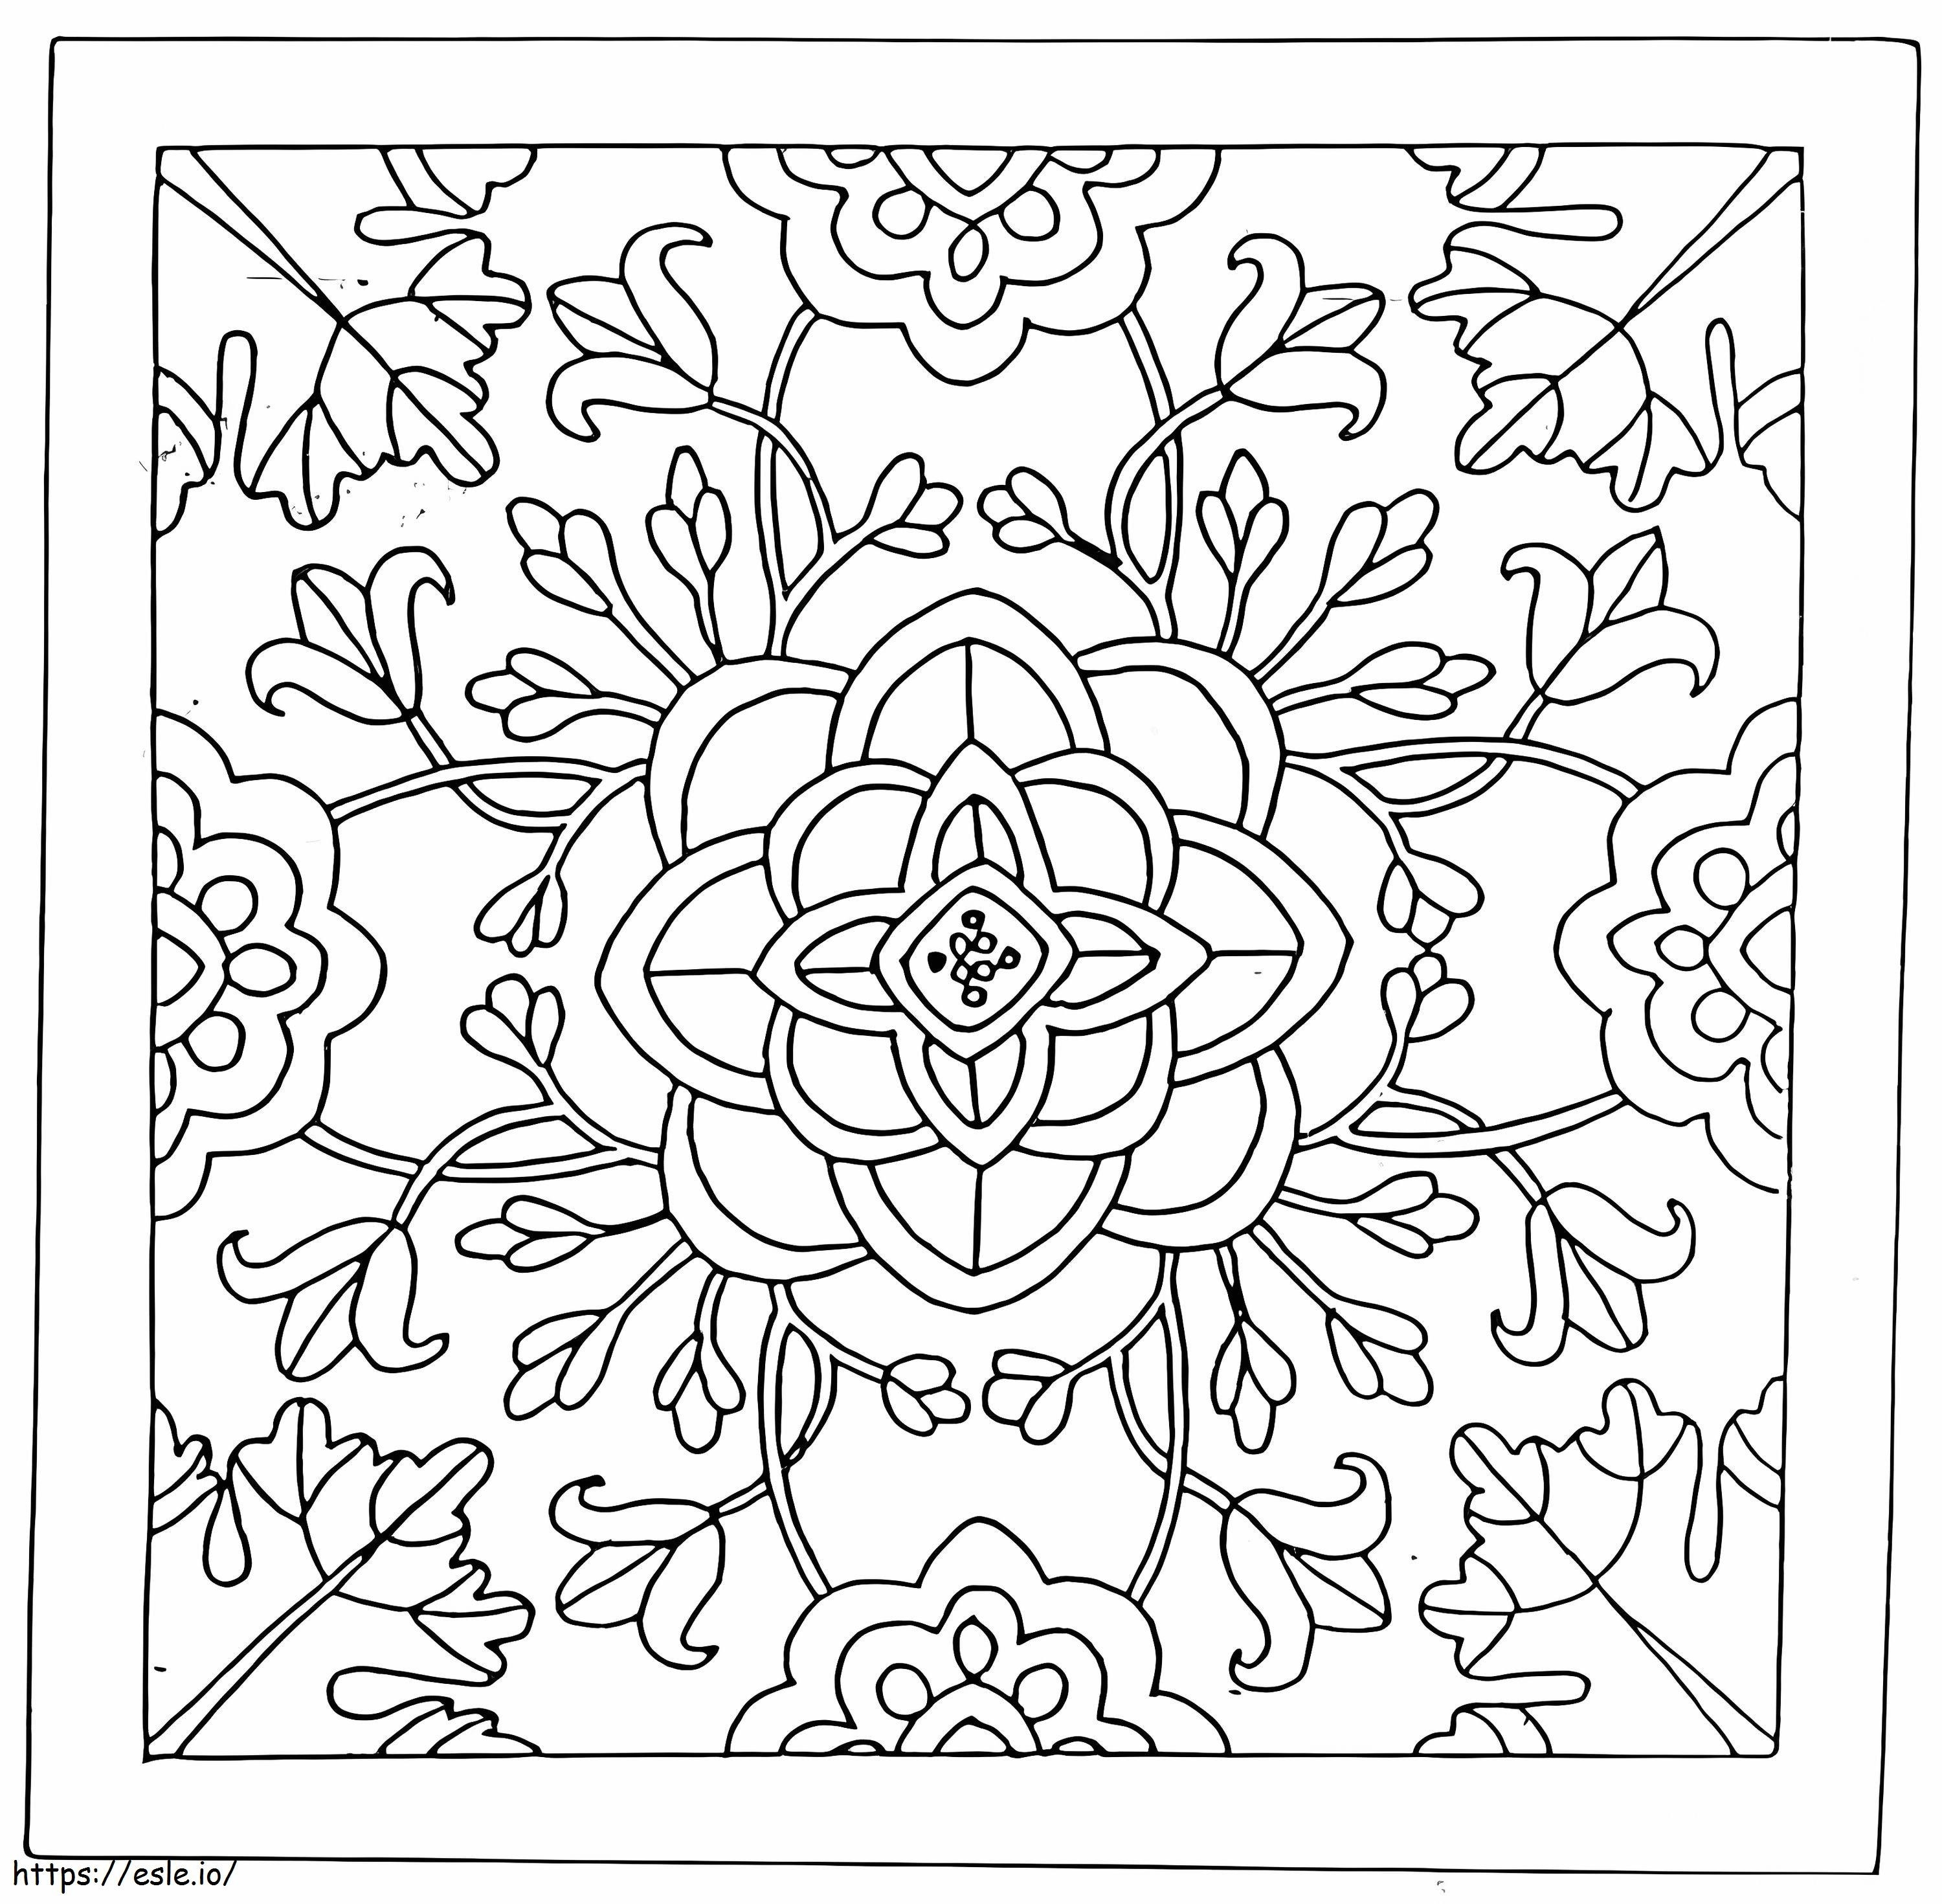 Coloriage Mandala avec des fleurs à imprimer dessin